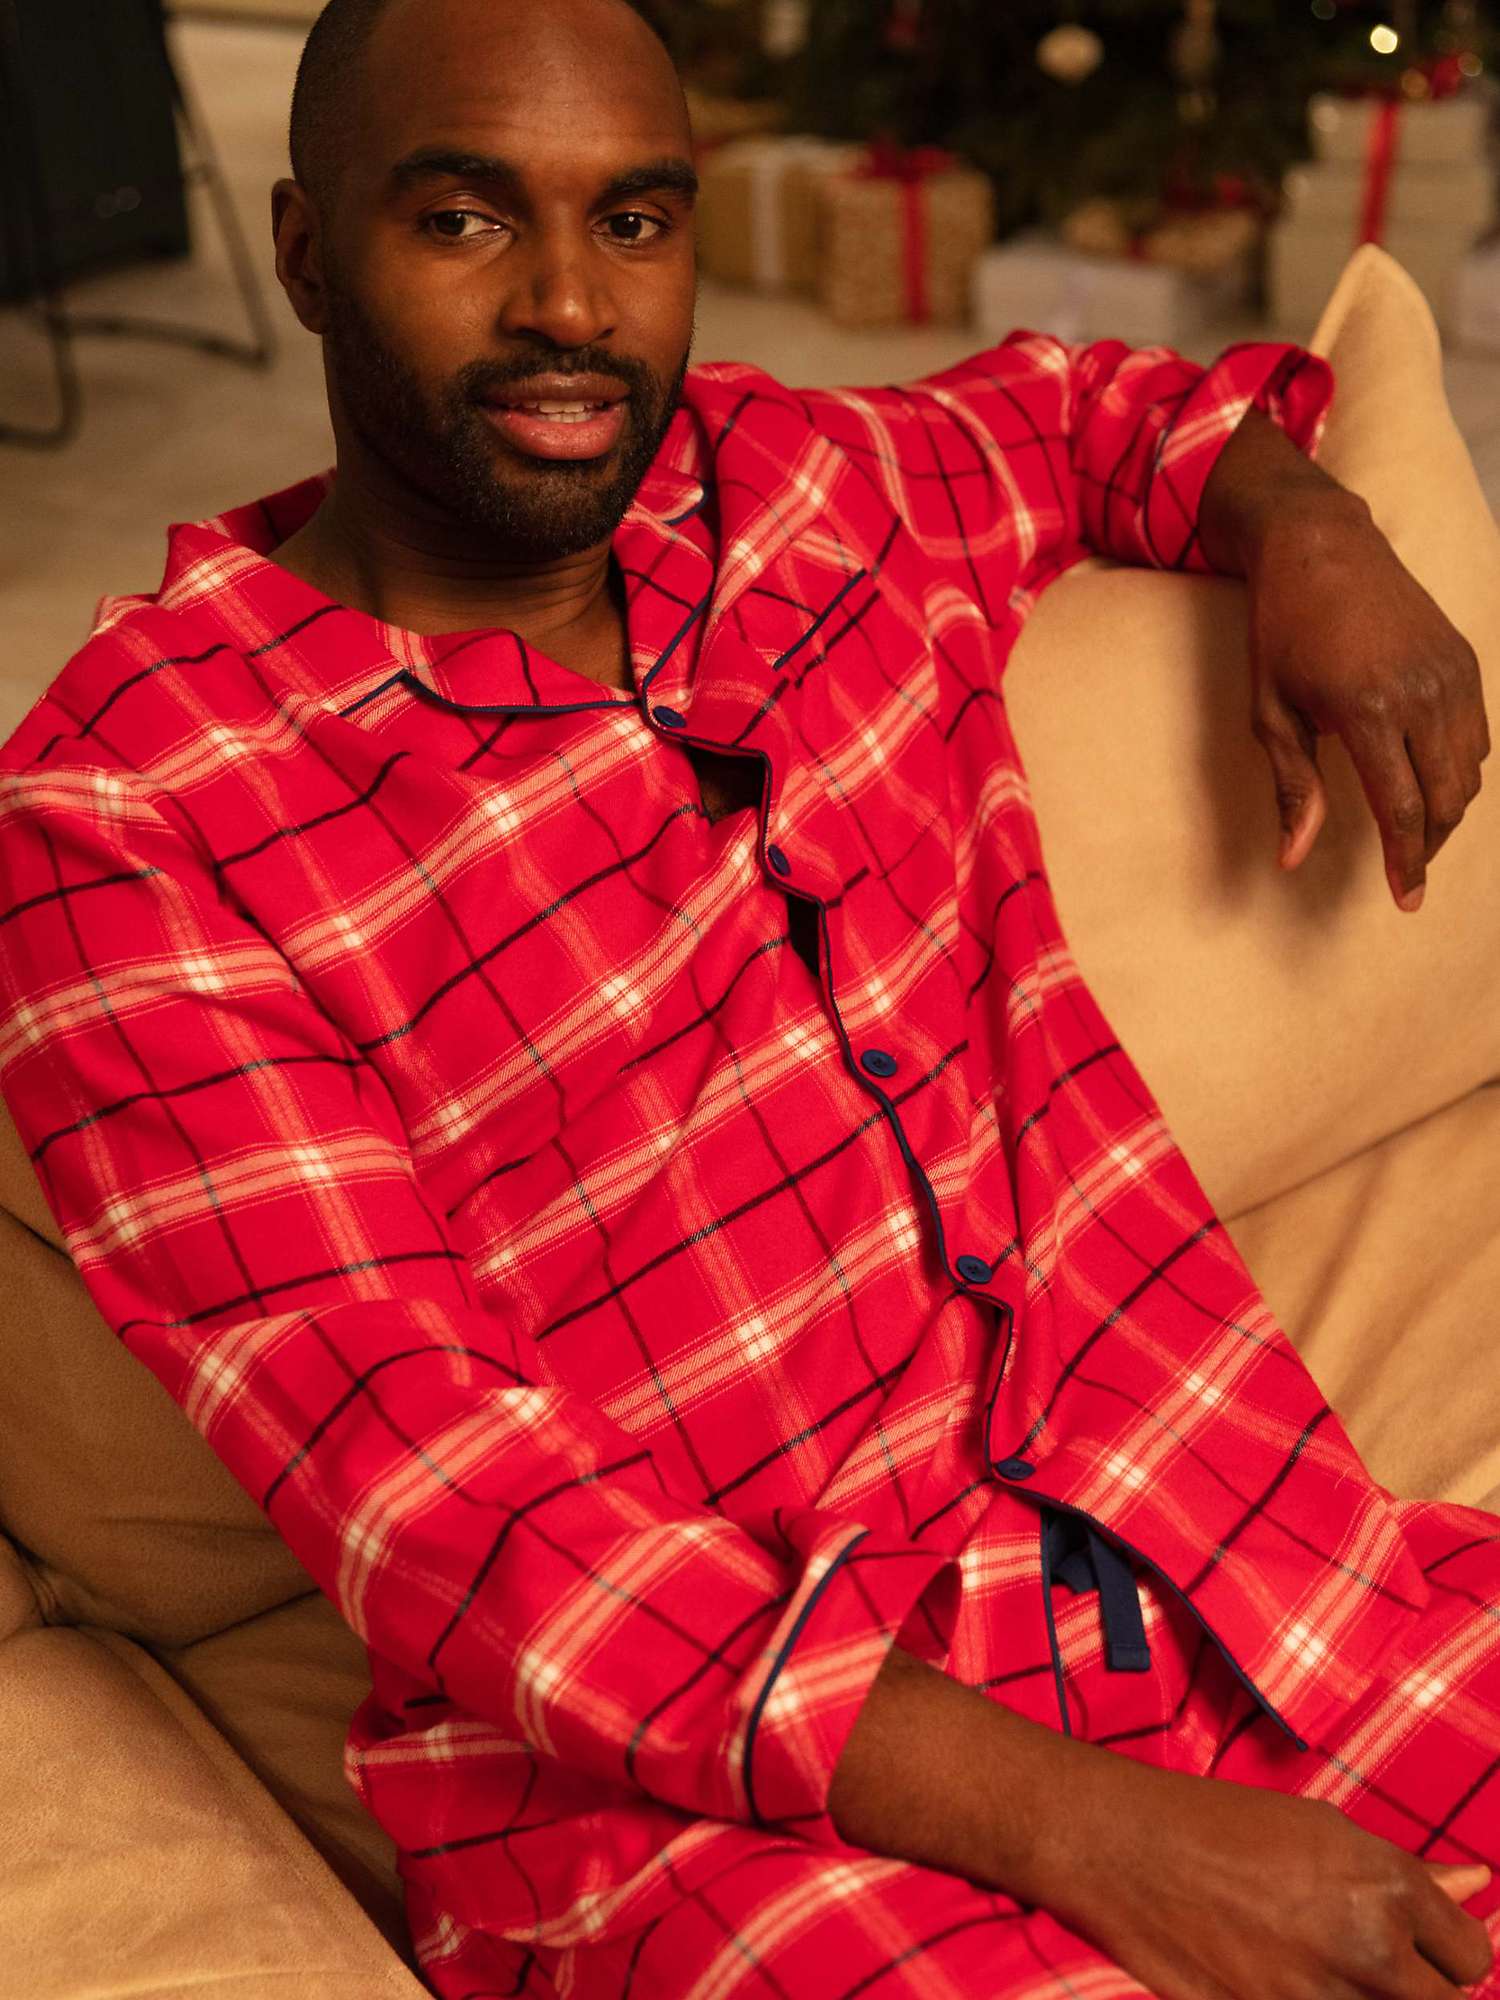 Buy Cyberjammies Noel Check Long Sleeve Pyjama Top, Red/White Online at johnlewis.com